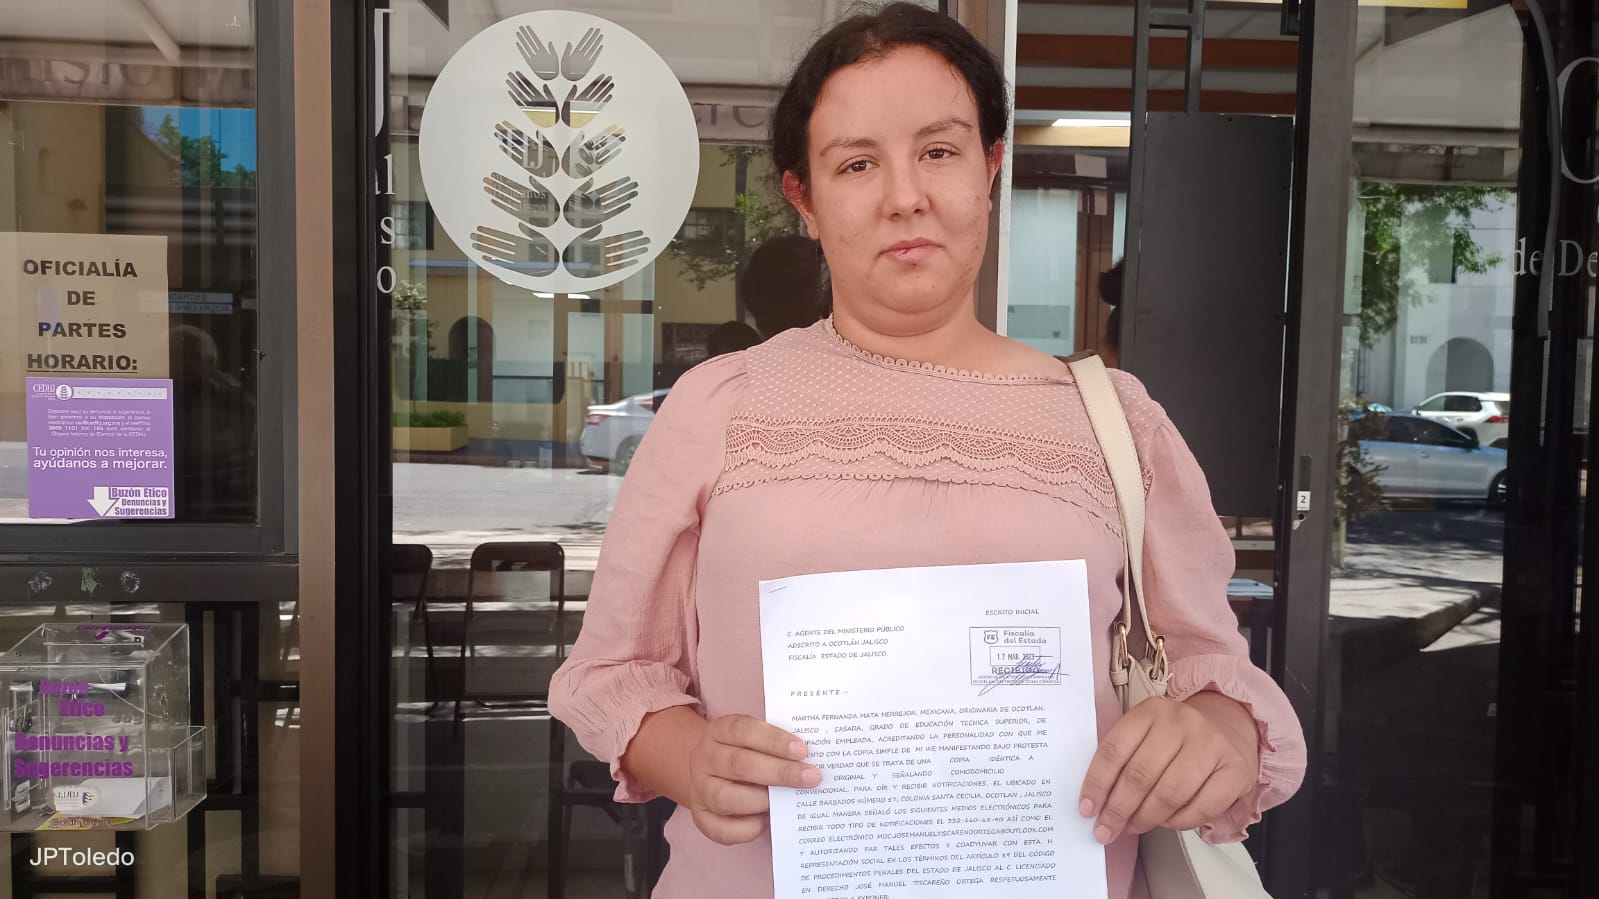 Denuncia acoso en PC Ocotlán y no solo la ignoran, también la amenazan